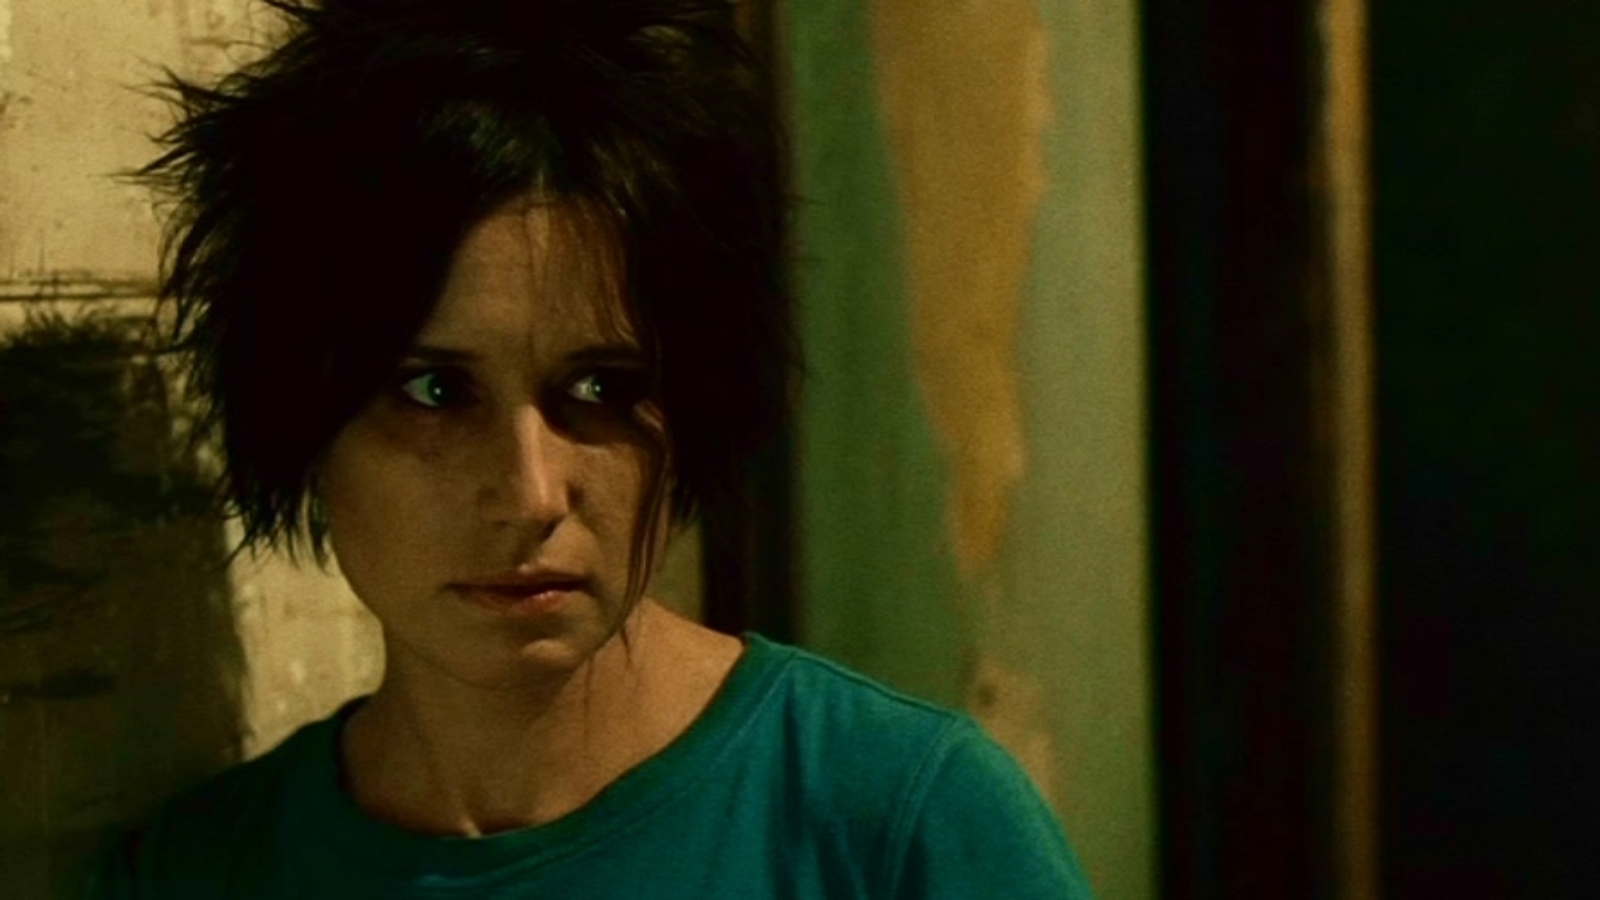 Shawnee Smith as Amanda Young in Saw II